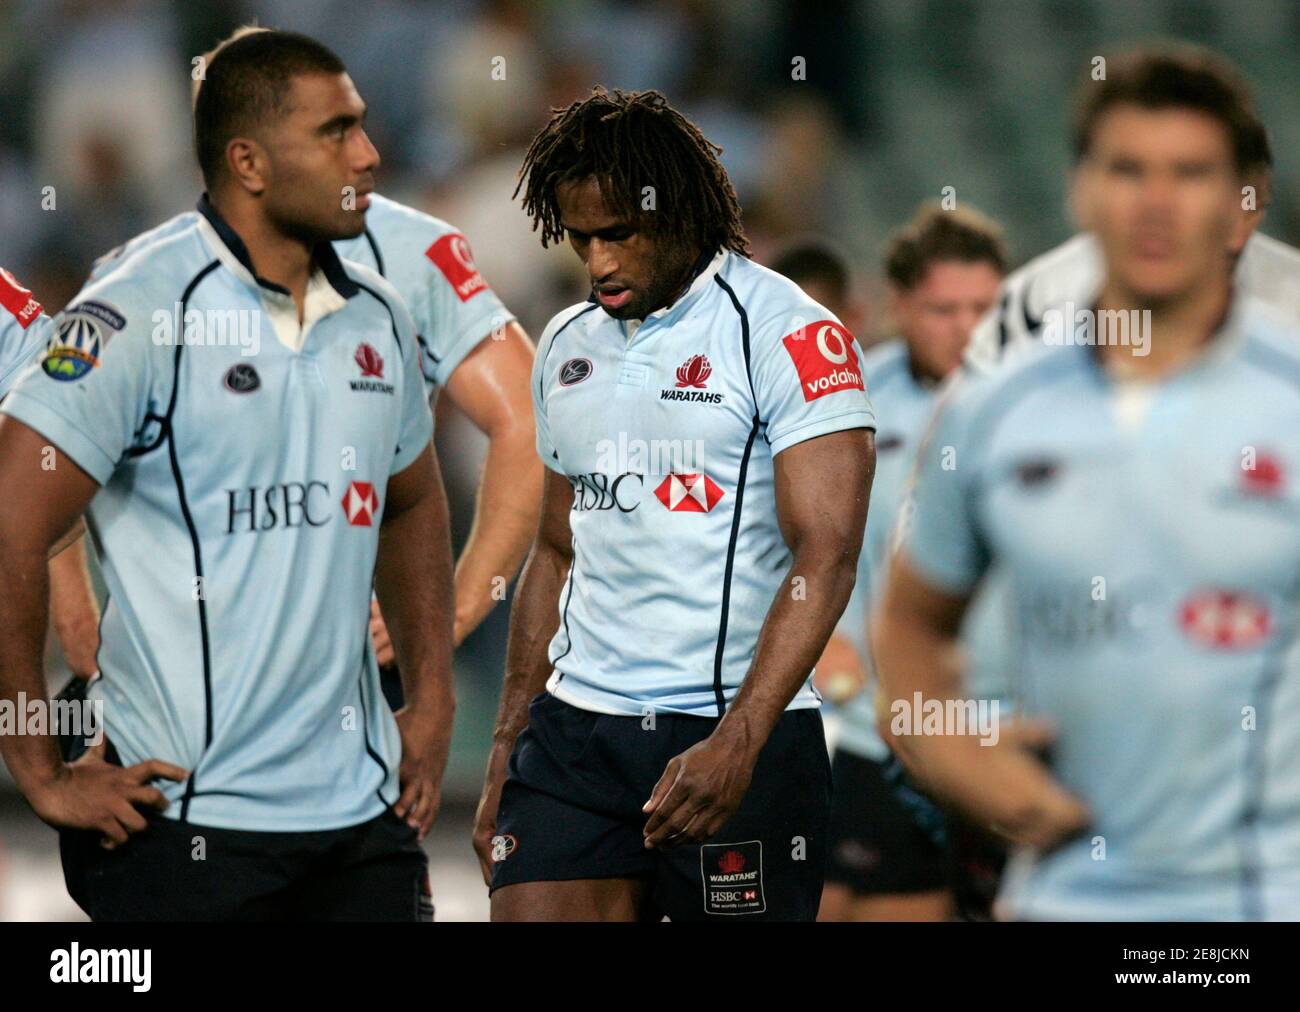 Lote Tuqiri von NSW Waratahs aus Australien (C) reagiert nach dem 32-19-Niederlage seines Teams gegen die Bulls aus Südafrika in ihrem Super 14 Rugby-Spiel in Sydney am 10. März 2007. REUTERS/will Burgess (AUSTRALIEN) Stockfoto